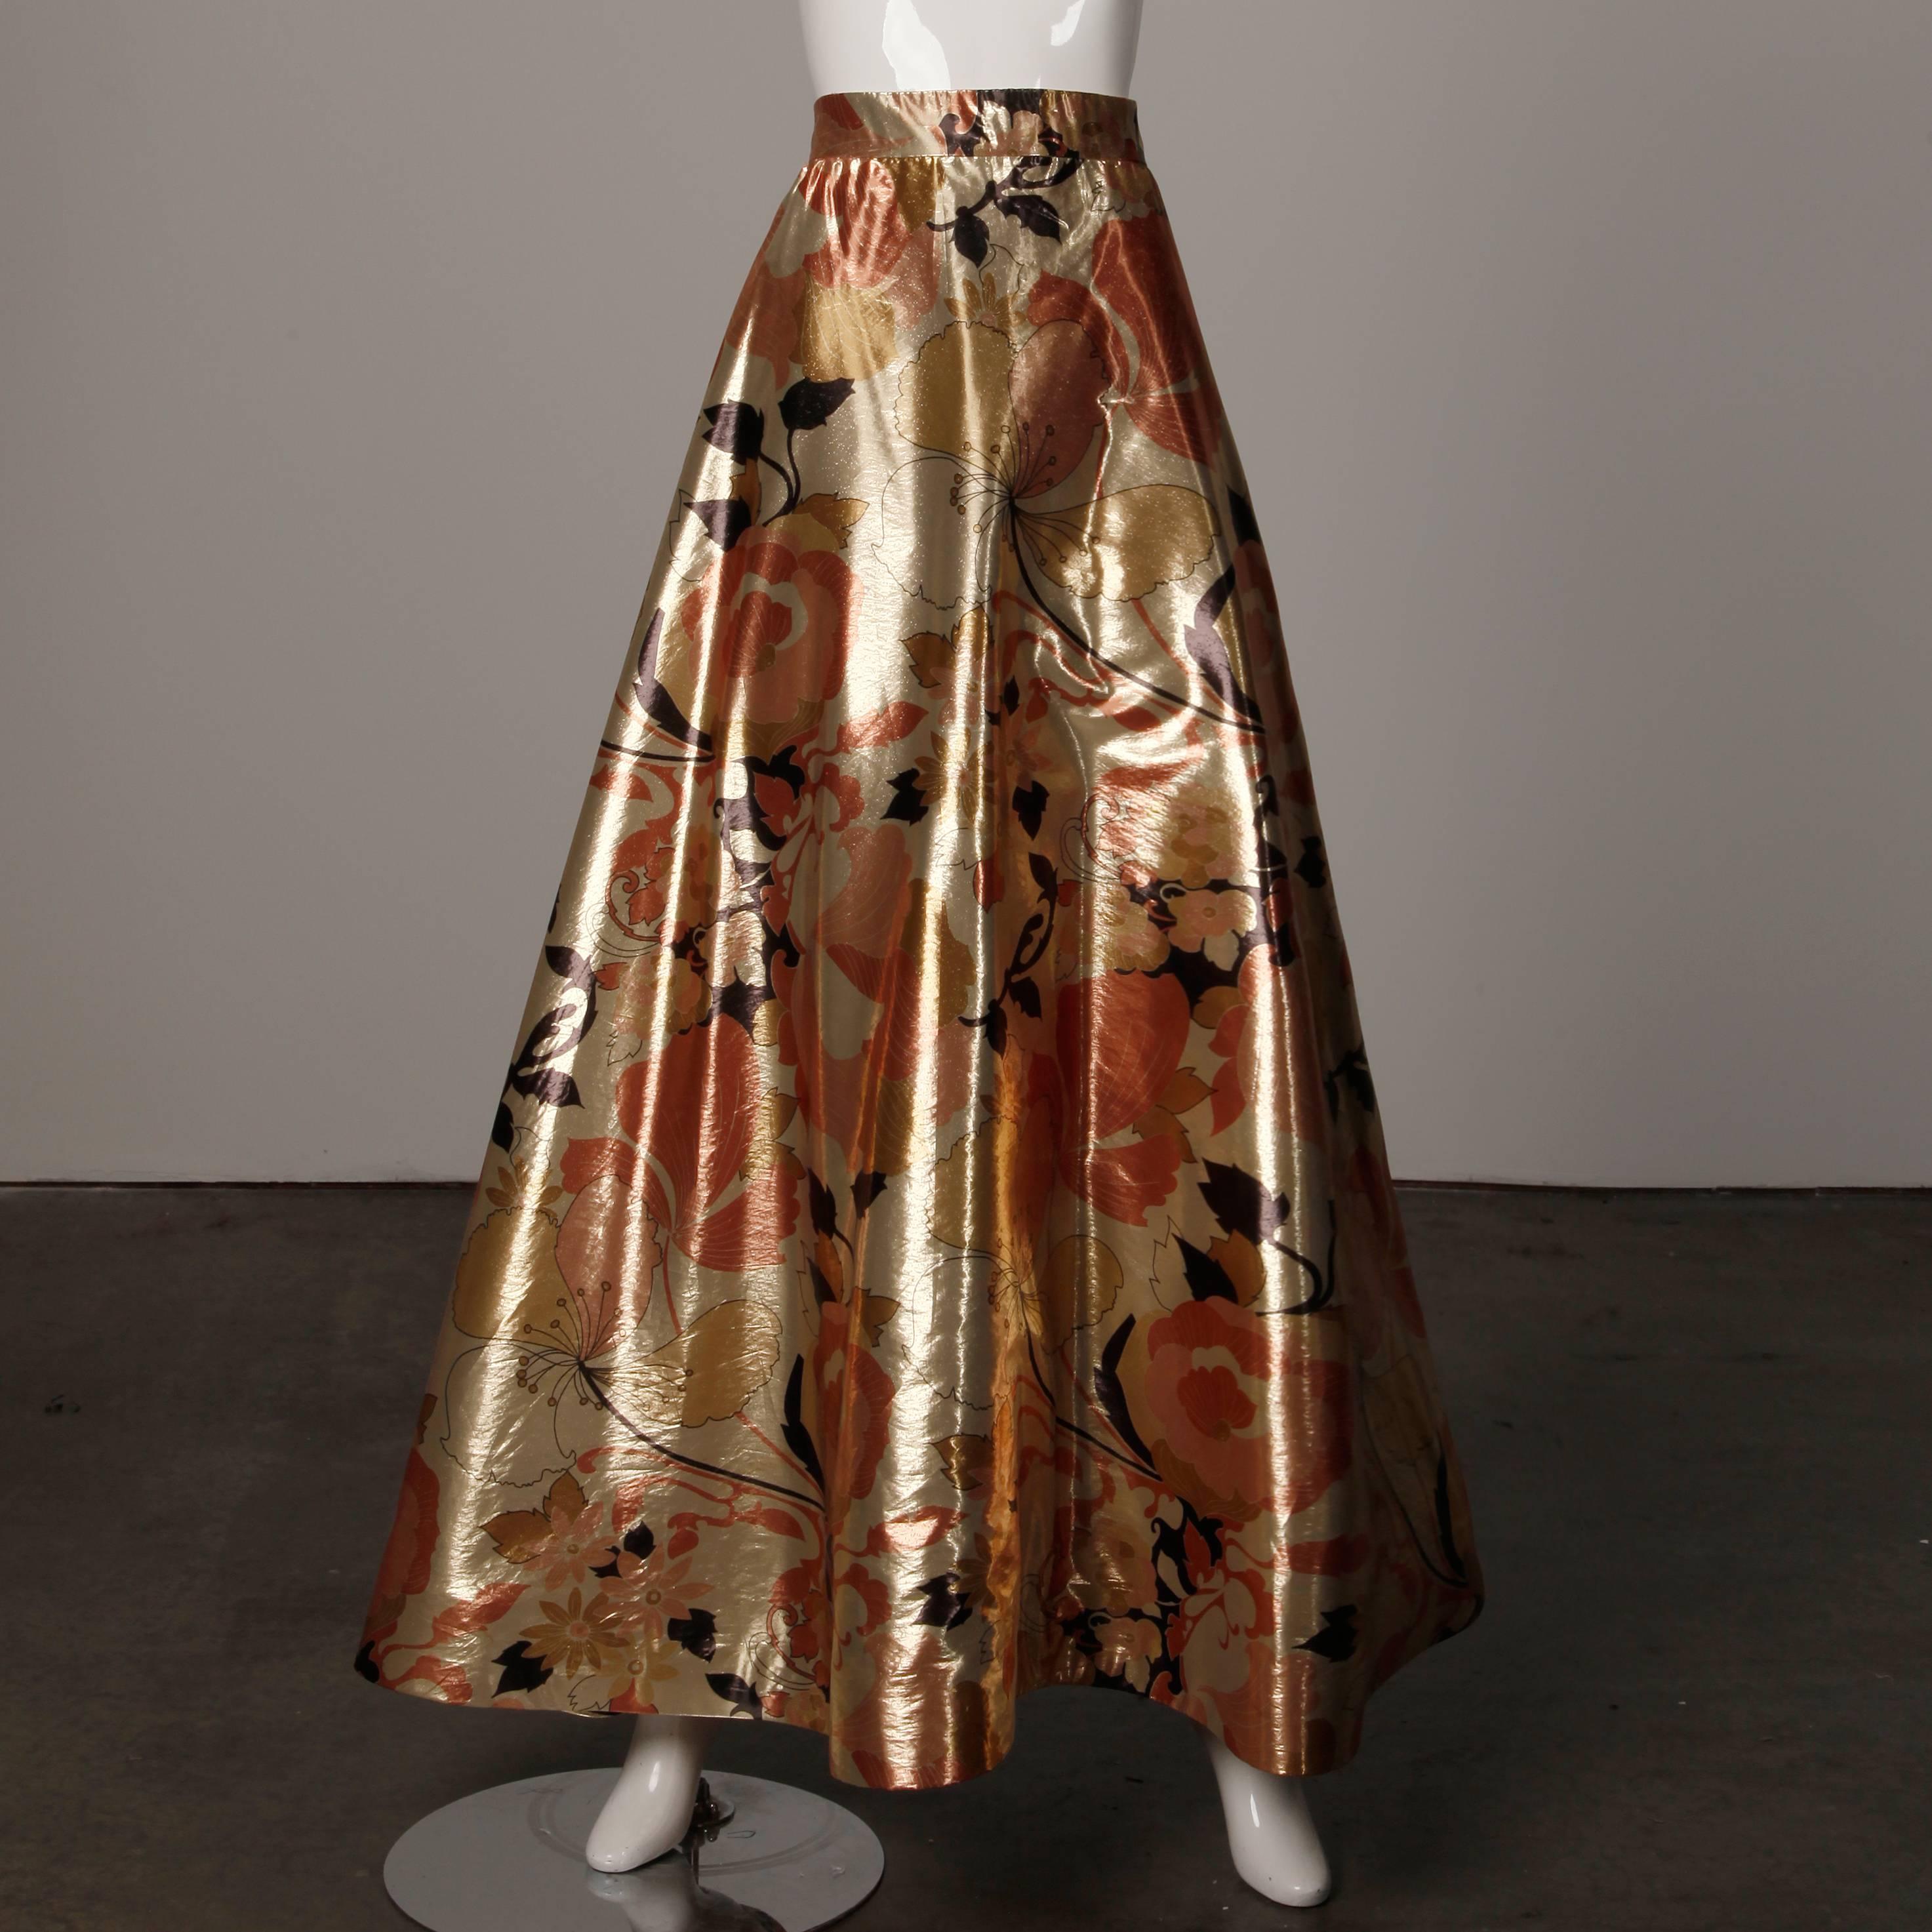 Superbe ensemble de robes du soir 2 pièces vintage des années 1970 par Arnold Scaasi en lamé de soie imprimé or métallique. Cet ensemble correspond à une taille moderne XS. Le haut est entièrement doublé et se ferme à l'arrière par une fermeture